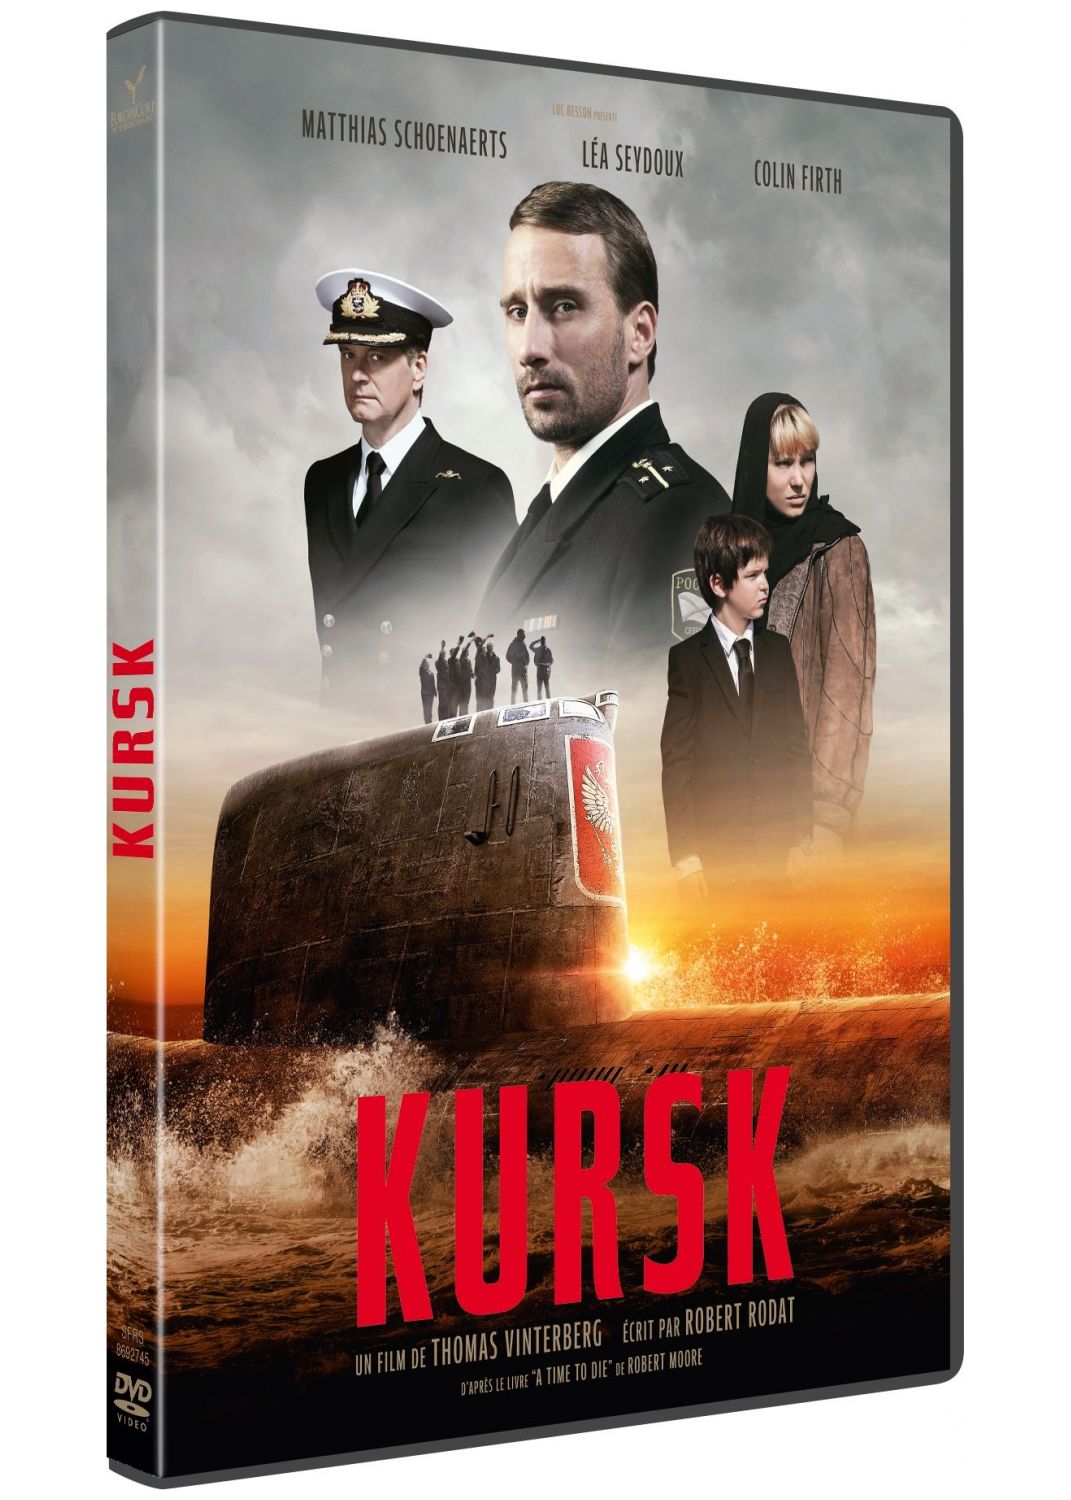 Kursk [DVD]